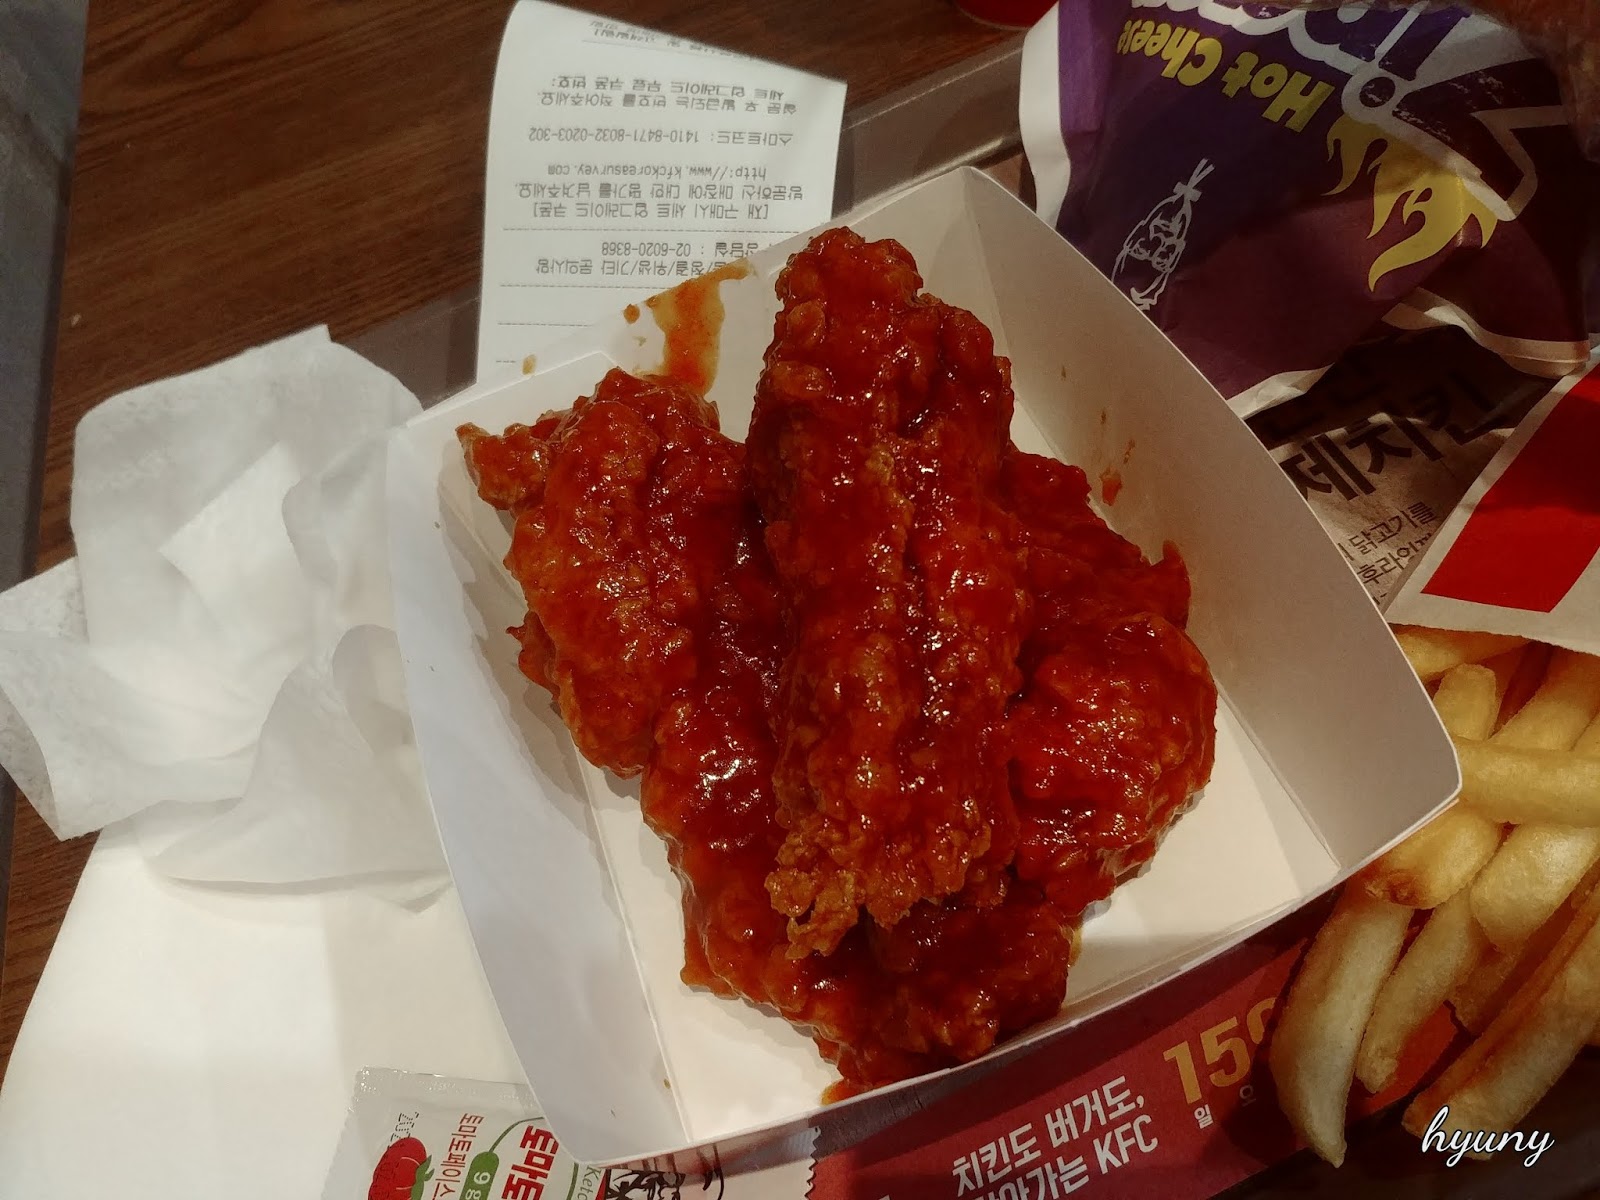 KFC 갓 양념치킨 (블랙라벨) 정보 그리고 맛 후기